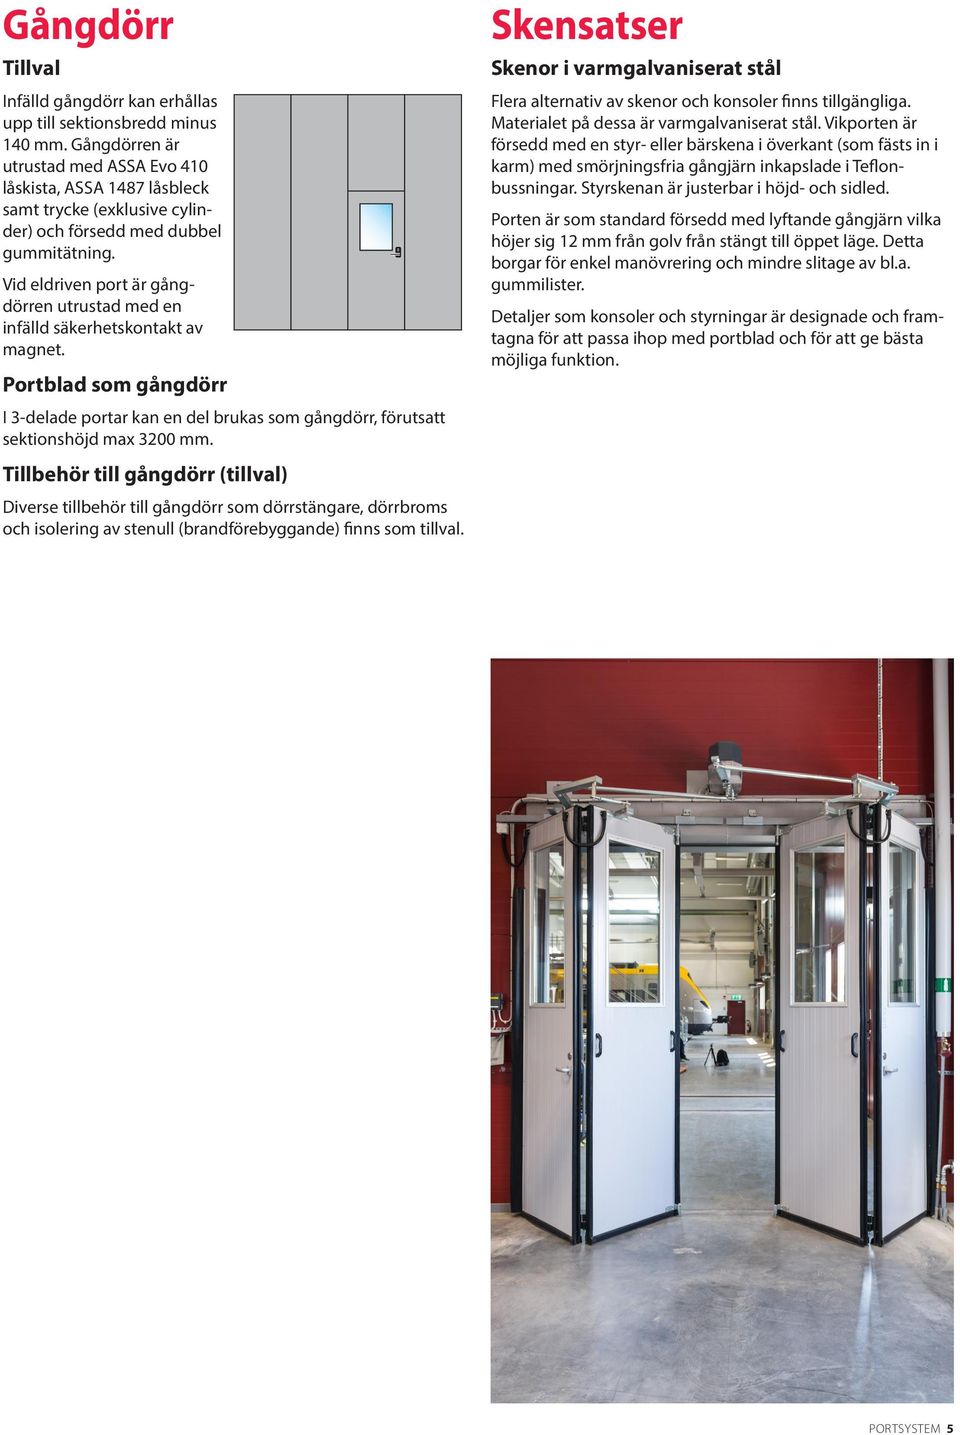 Vid eldriven port är gångdörren utrustad med en infälld säkerhetskontakt av magnet. Portblad som gångdörr I 3-delade portar kan en del brukas som gångdörr, förutsatt sektionshöjd max 3200 mm.